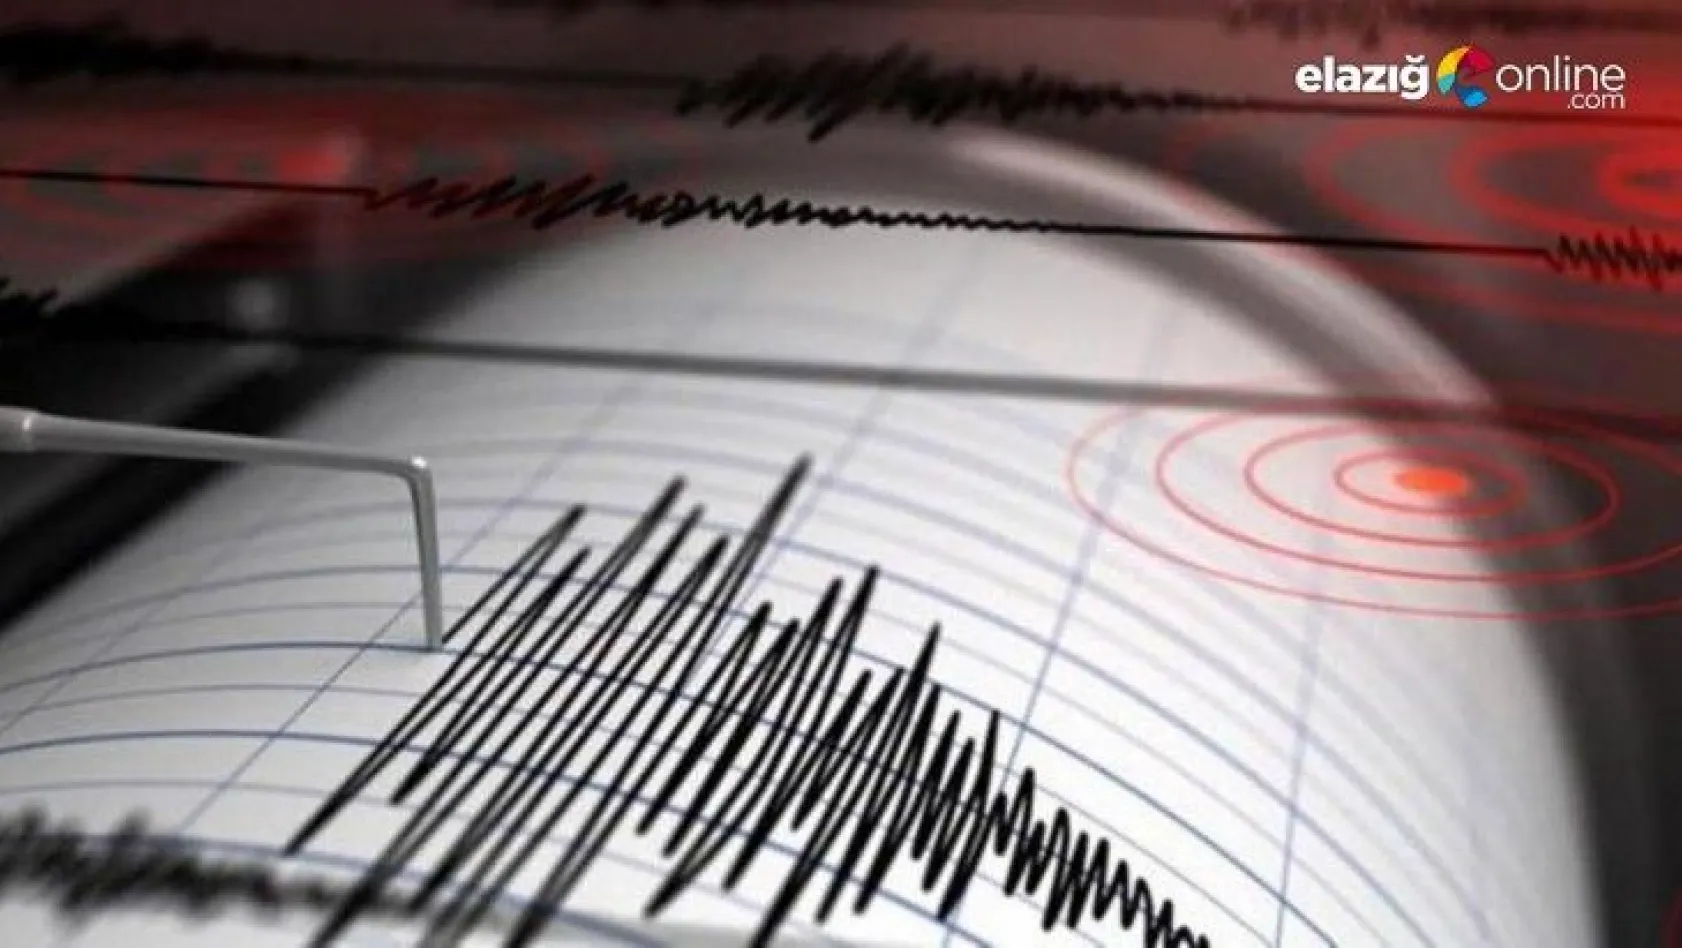 Bingöl'de 3.2 büyüklüğünde deprem